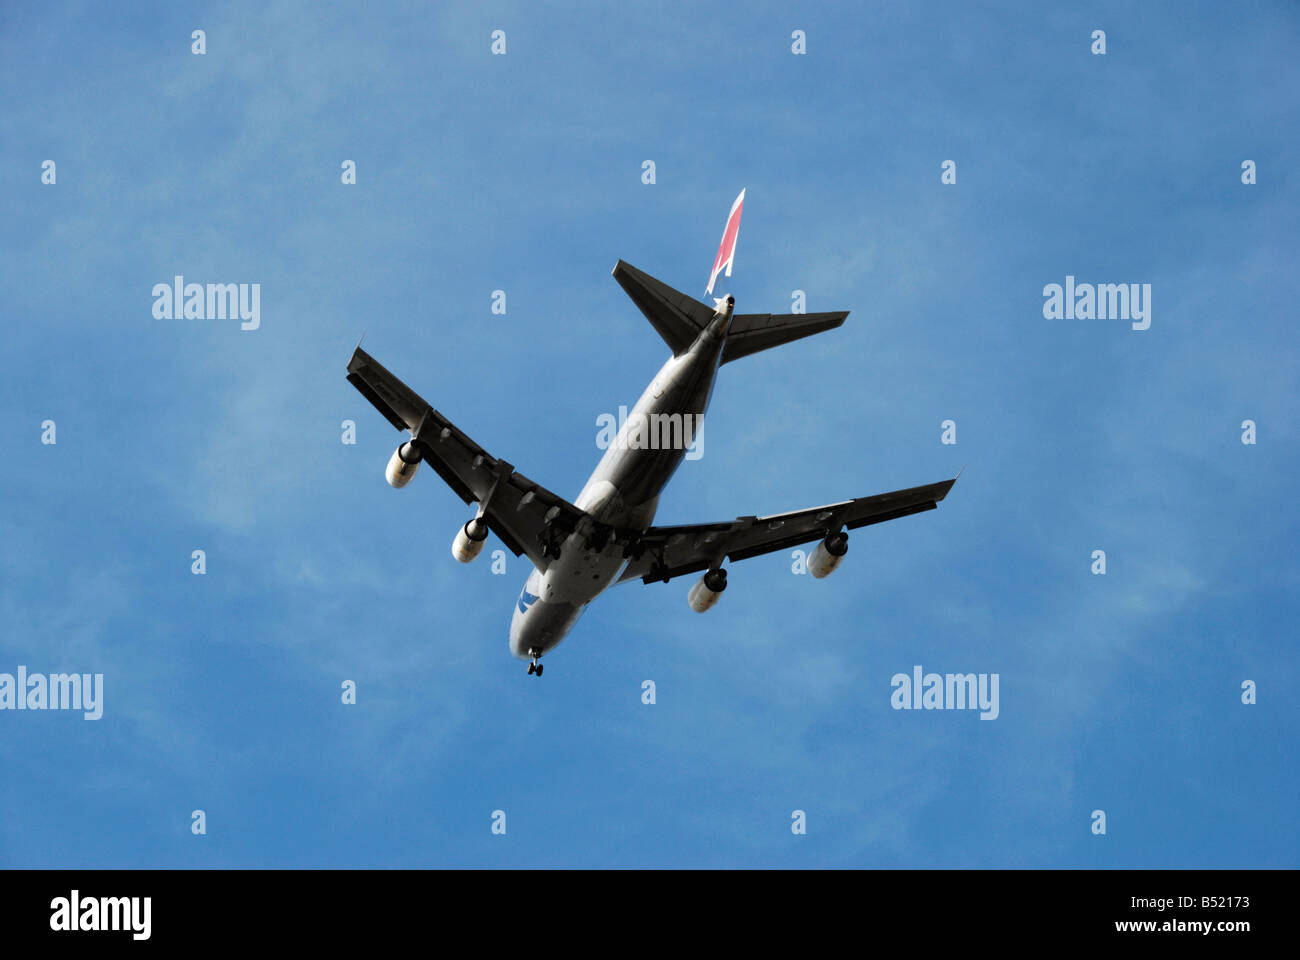 Passage shot MK Airlines Boeing 747 contre le ciel bleu Banque D'Images